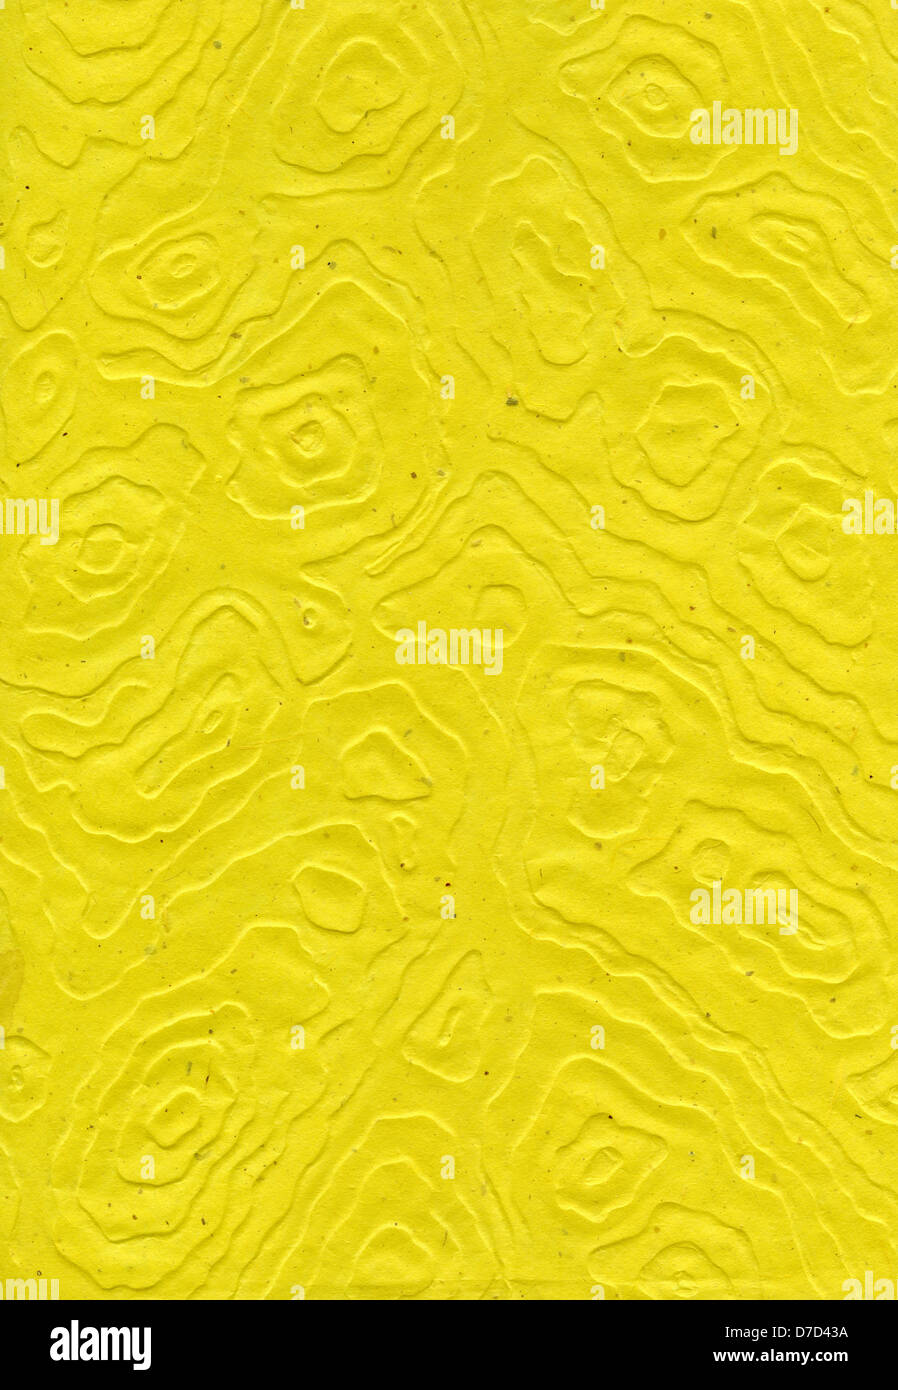 Scansione ad alta risoluzione giallo carta di riso motivo decorativo realizzato mandala anamorfici. Acquisite a 1200dpi utilizzando Epson professionale Foto Stock